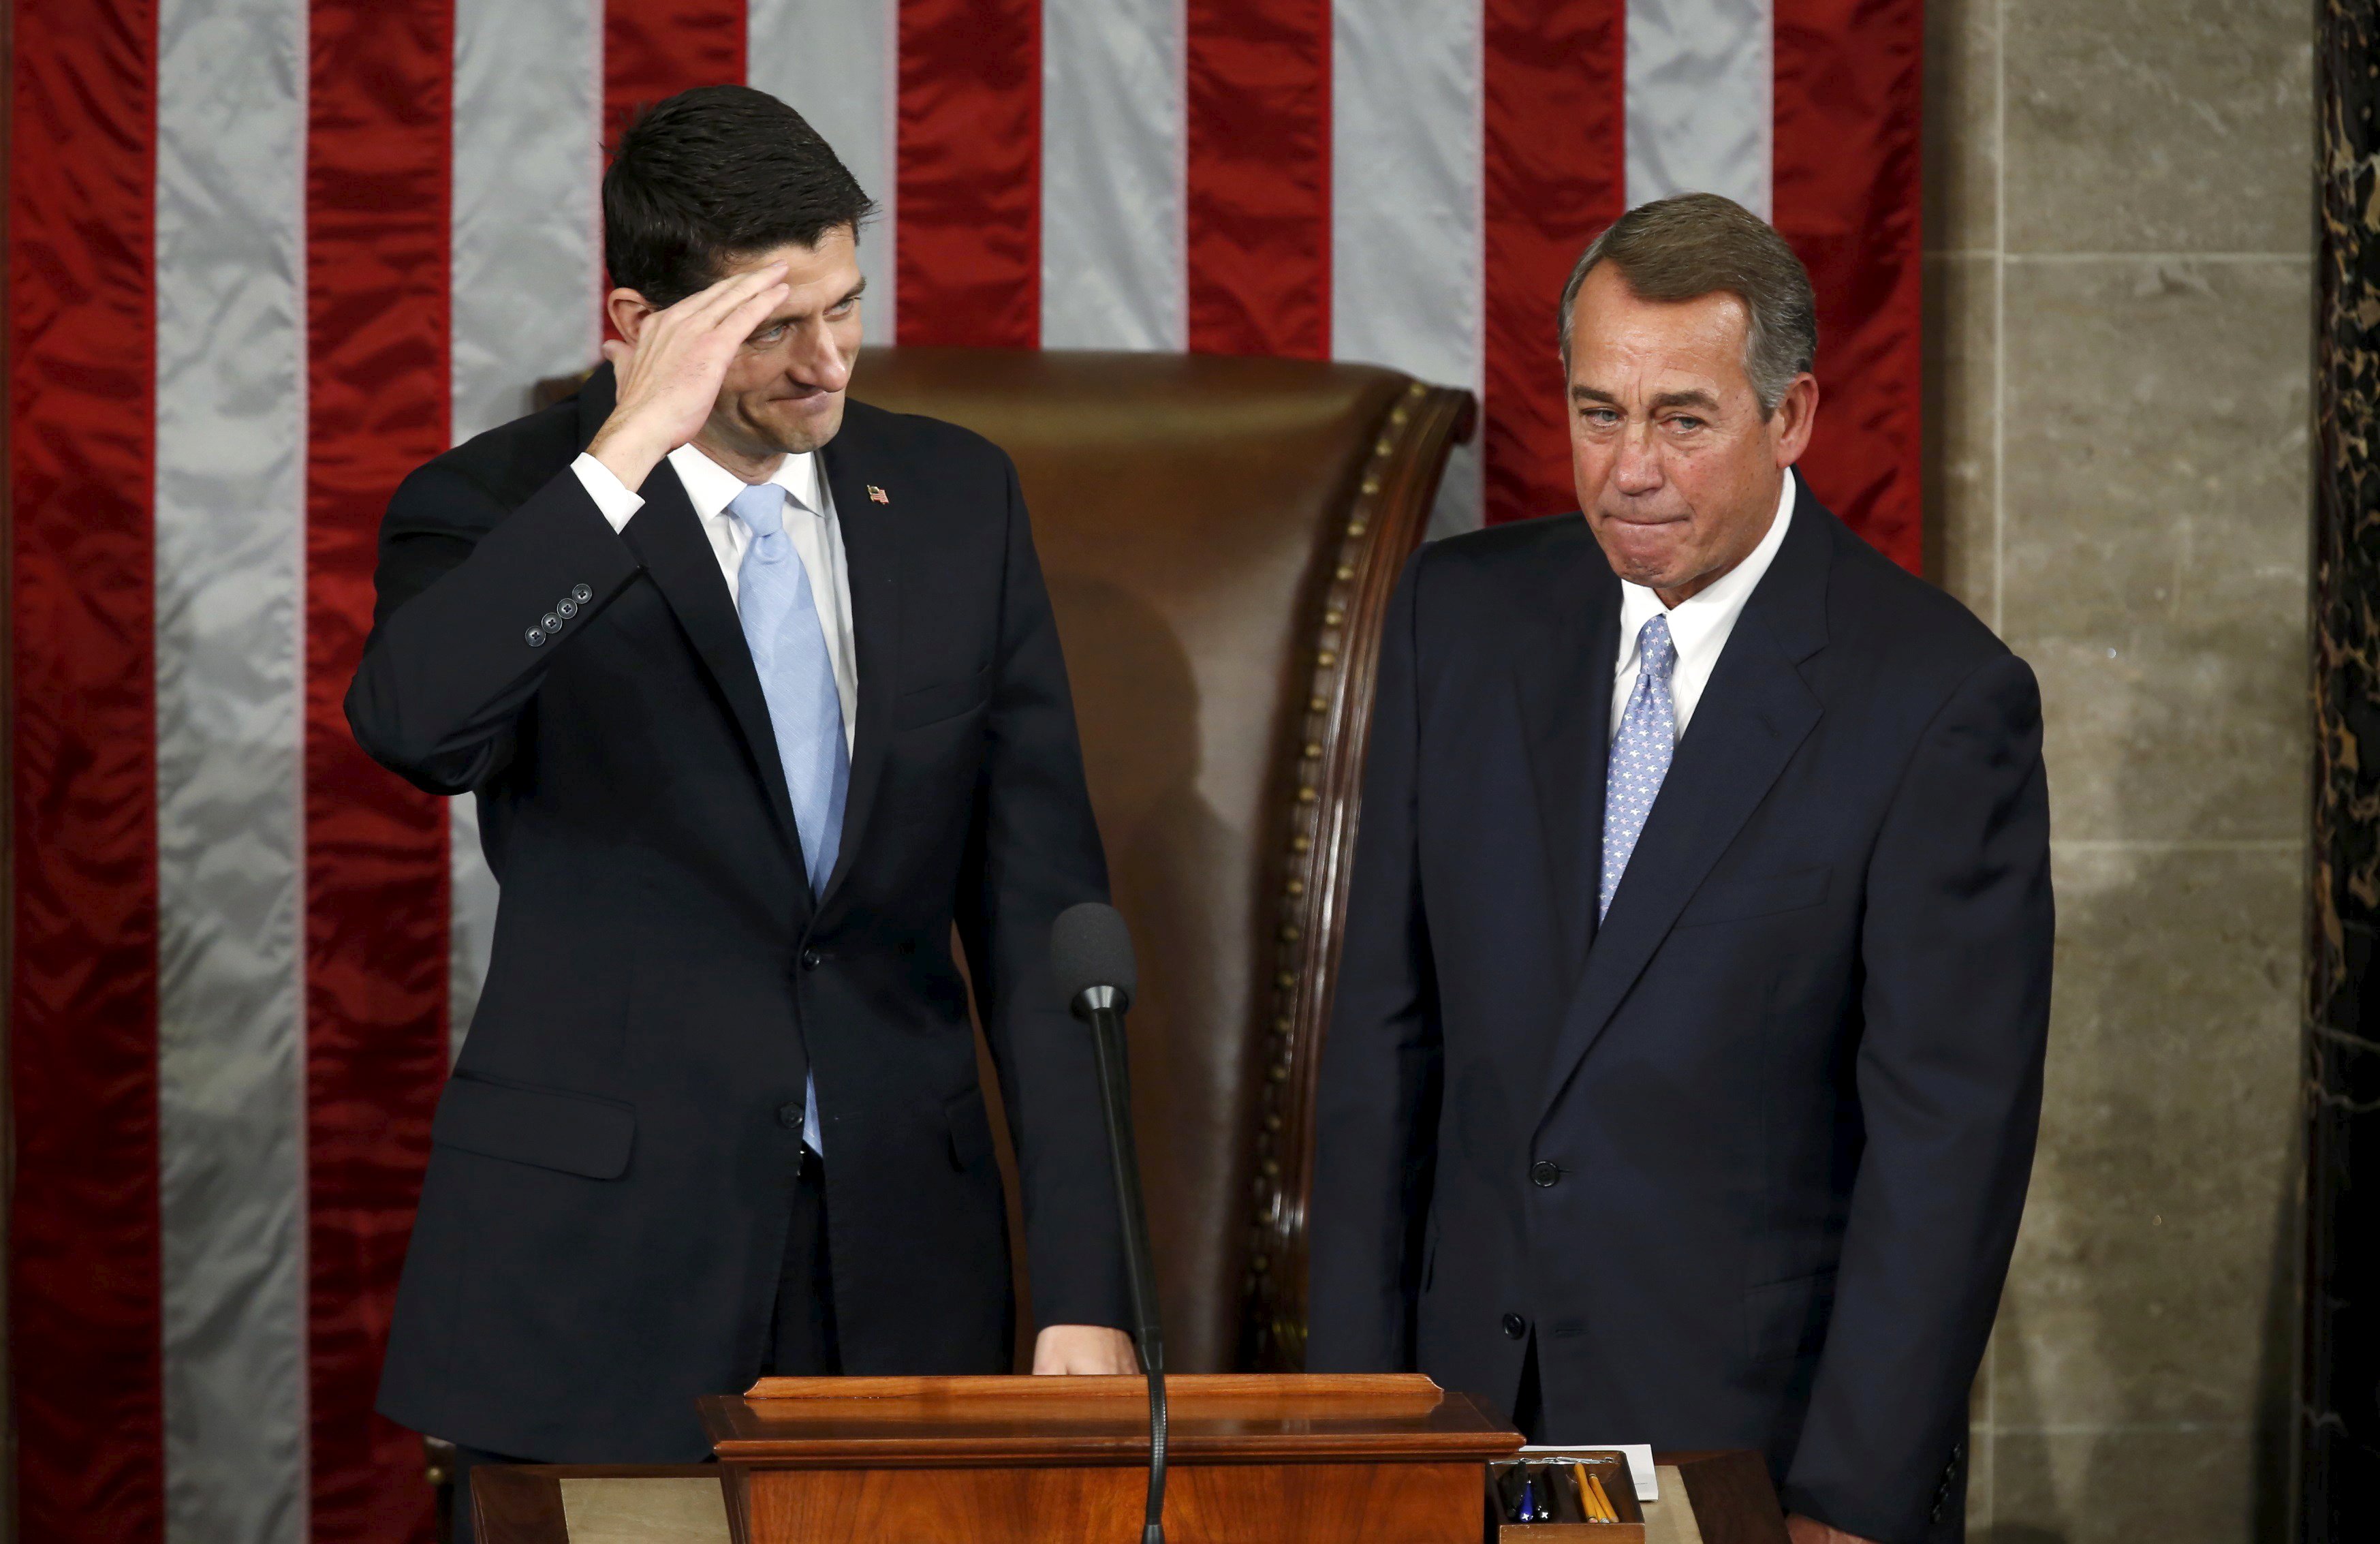 Ketua DPR Amerika Serikat terpilih Paul Ryan (kiri) memberi hormat kepada anggota DPR saat ia berdiri dengan John Boehner, yang meletakkan jabatannya sebagai Ketua DPR saat Paul Ryan terpilih di Capitol Hill di Washington, Kamis (29/10). REUTERS/Gary Cameron.